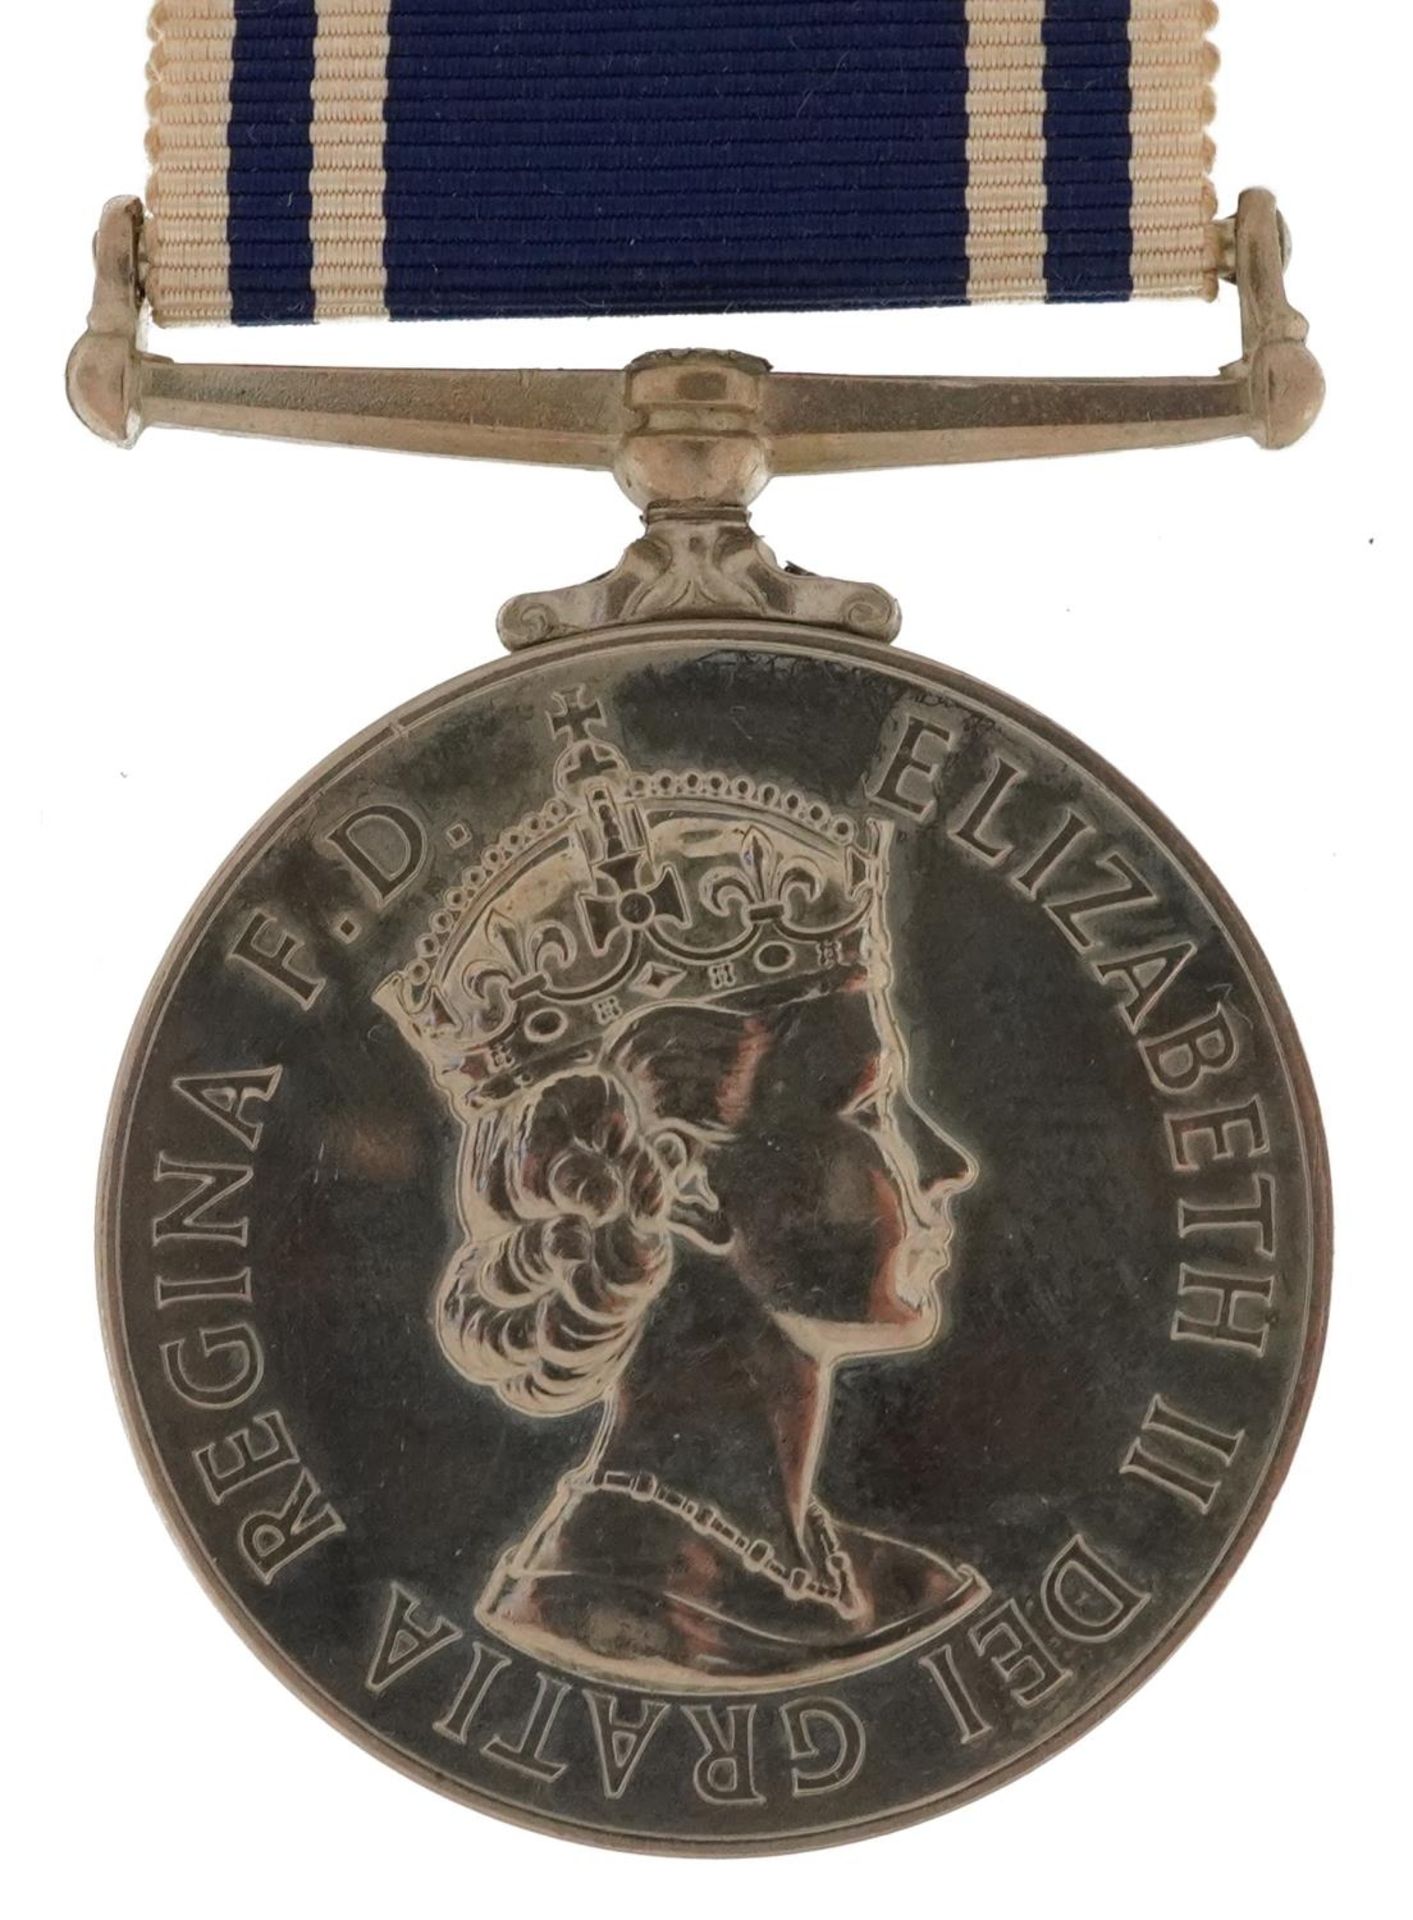 Elizabeth II Exemplary Police Service medal awarded to SERGT.ALAN.H.BIXTER : For further information